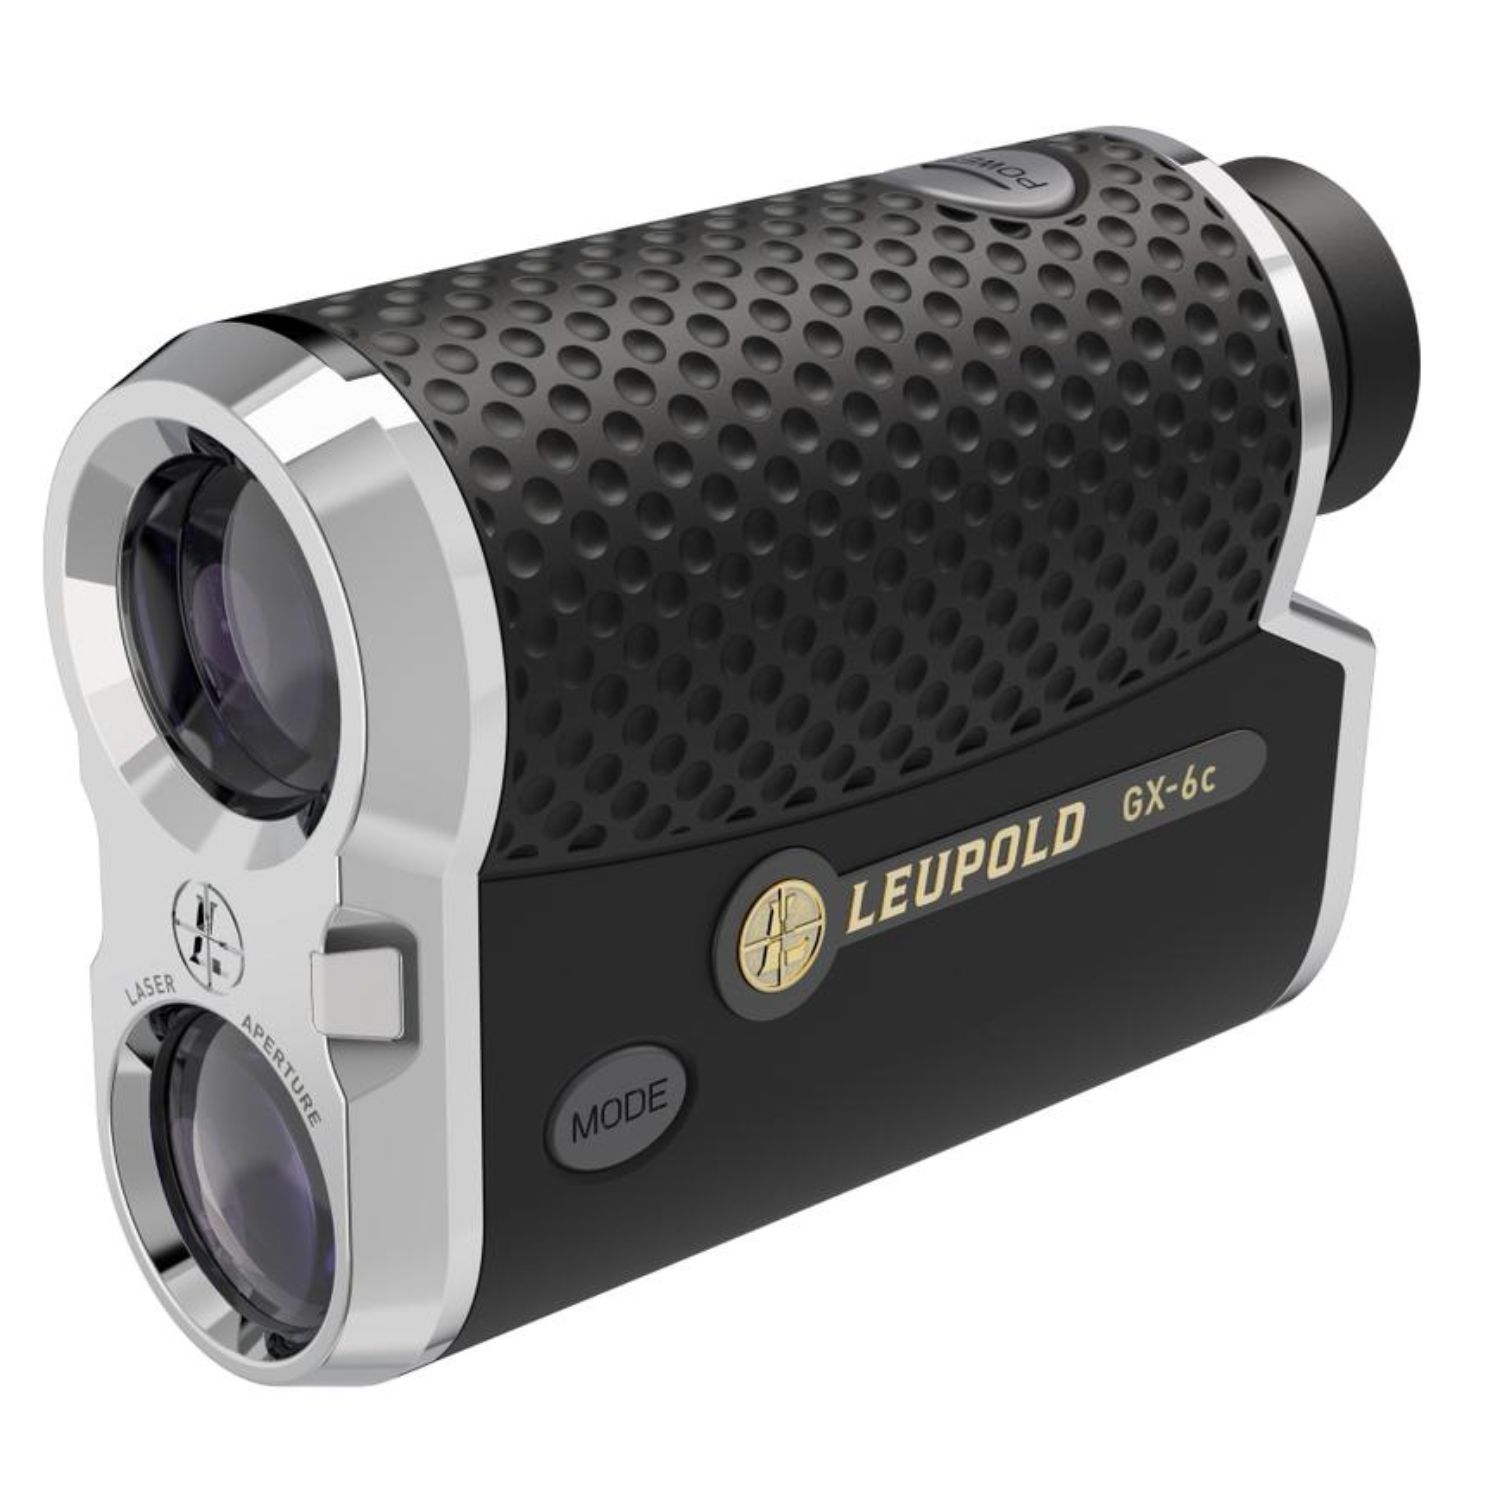 Leupold GX-6c Golf Laser Rangefinder